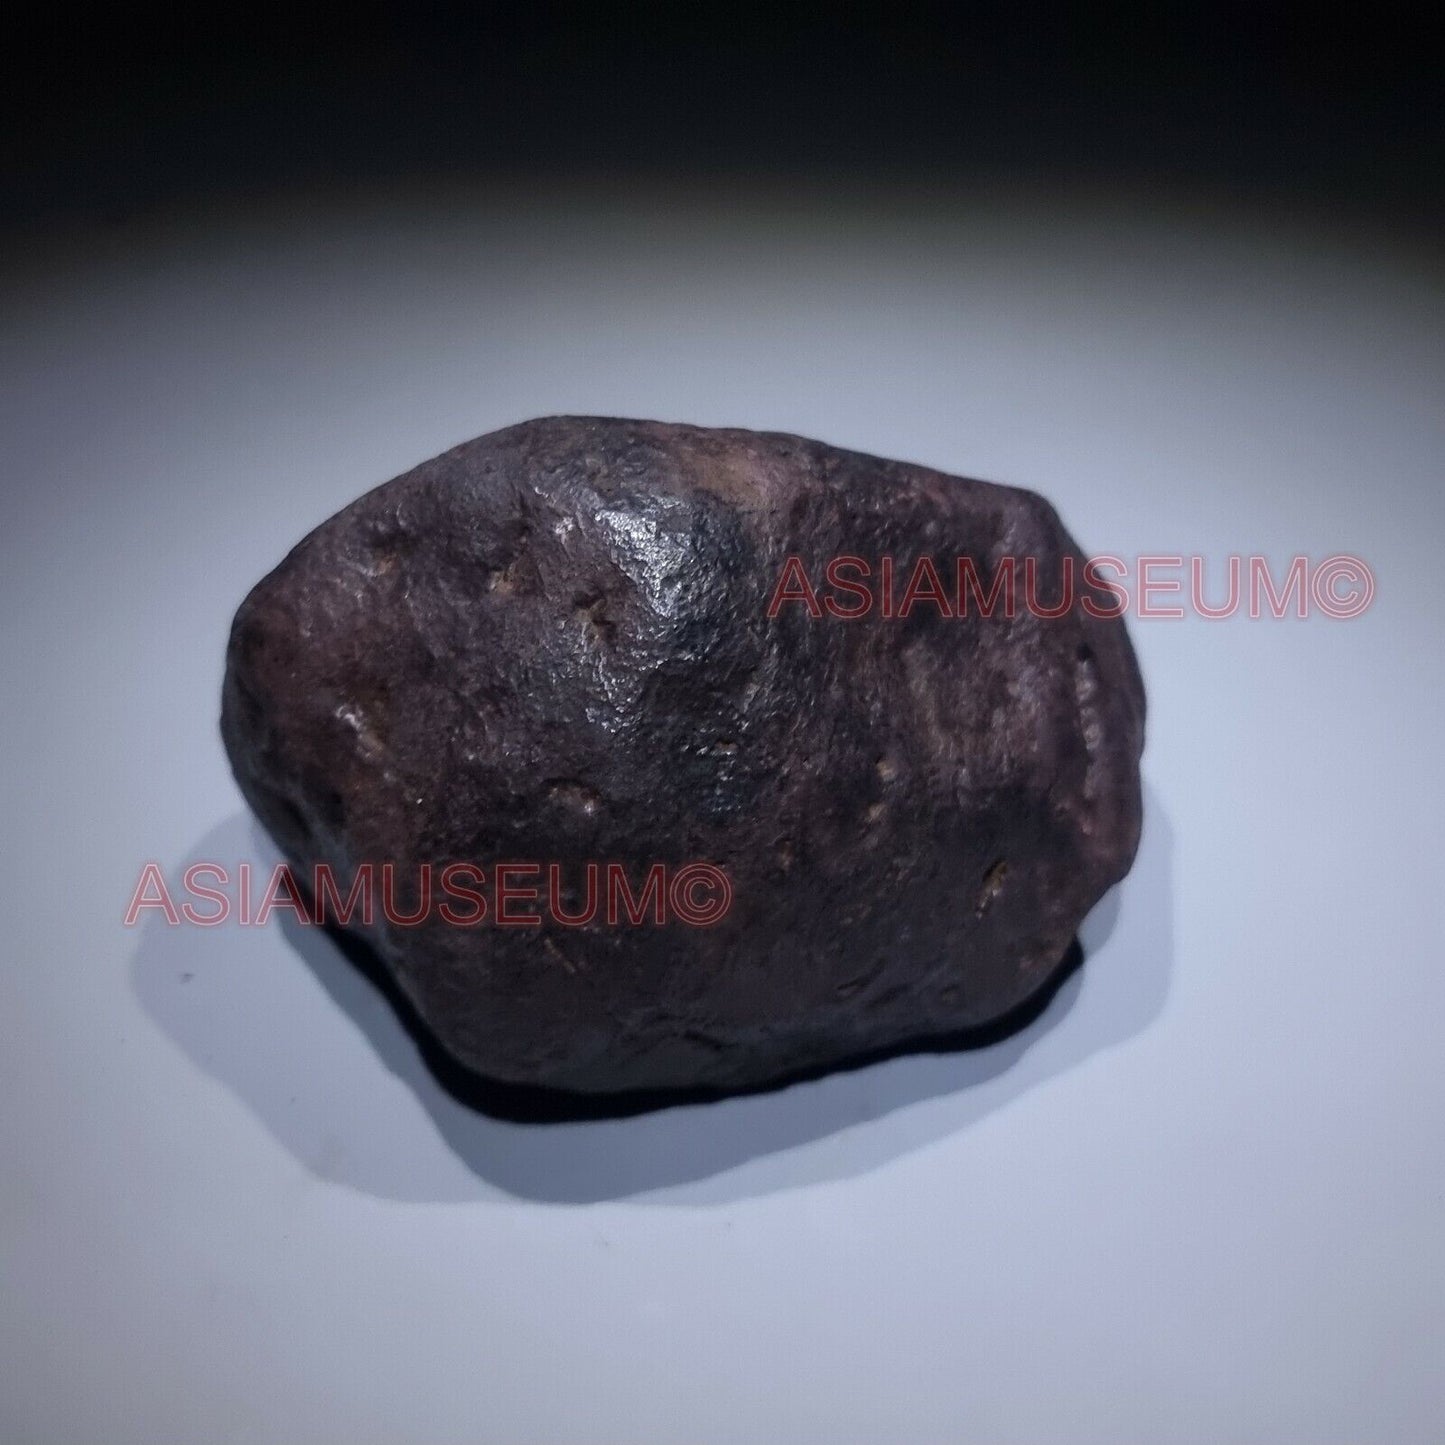 3.3 Pound IRON NICKEL METEORITE Crystal Meteor Aerolite NANTAN china nugget #23